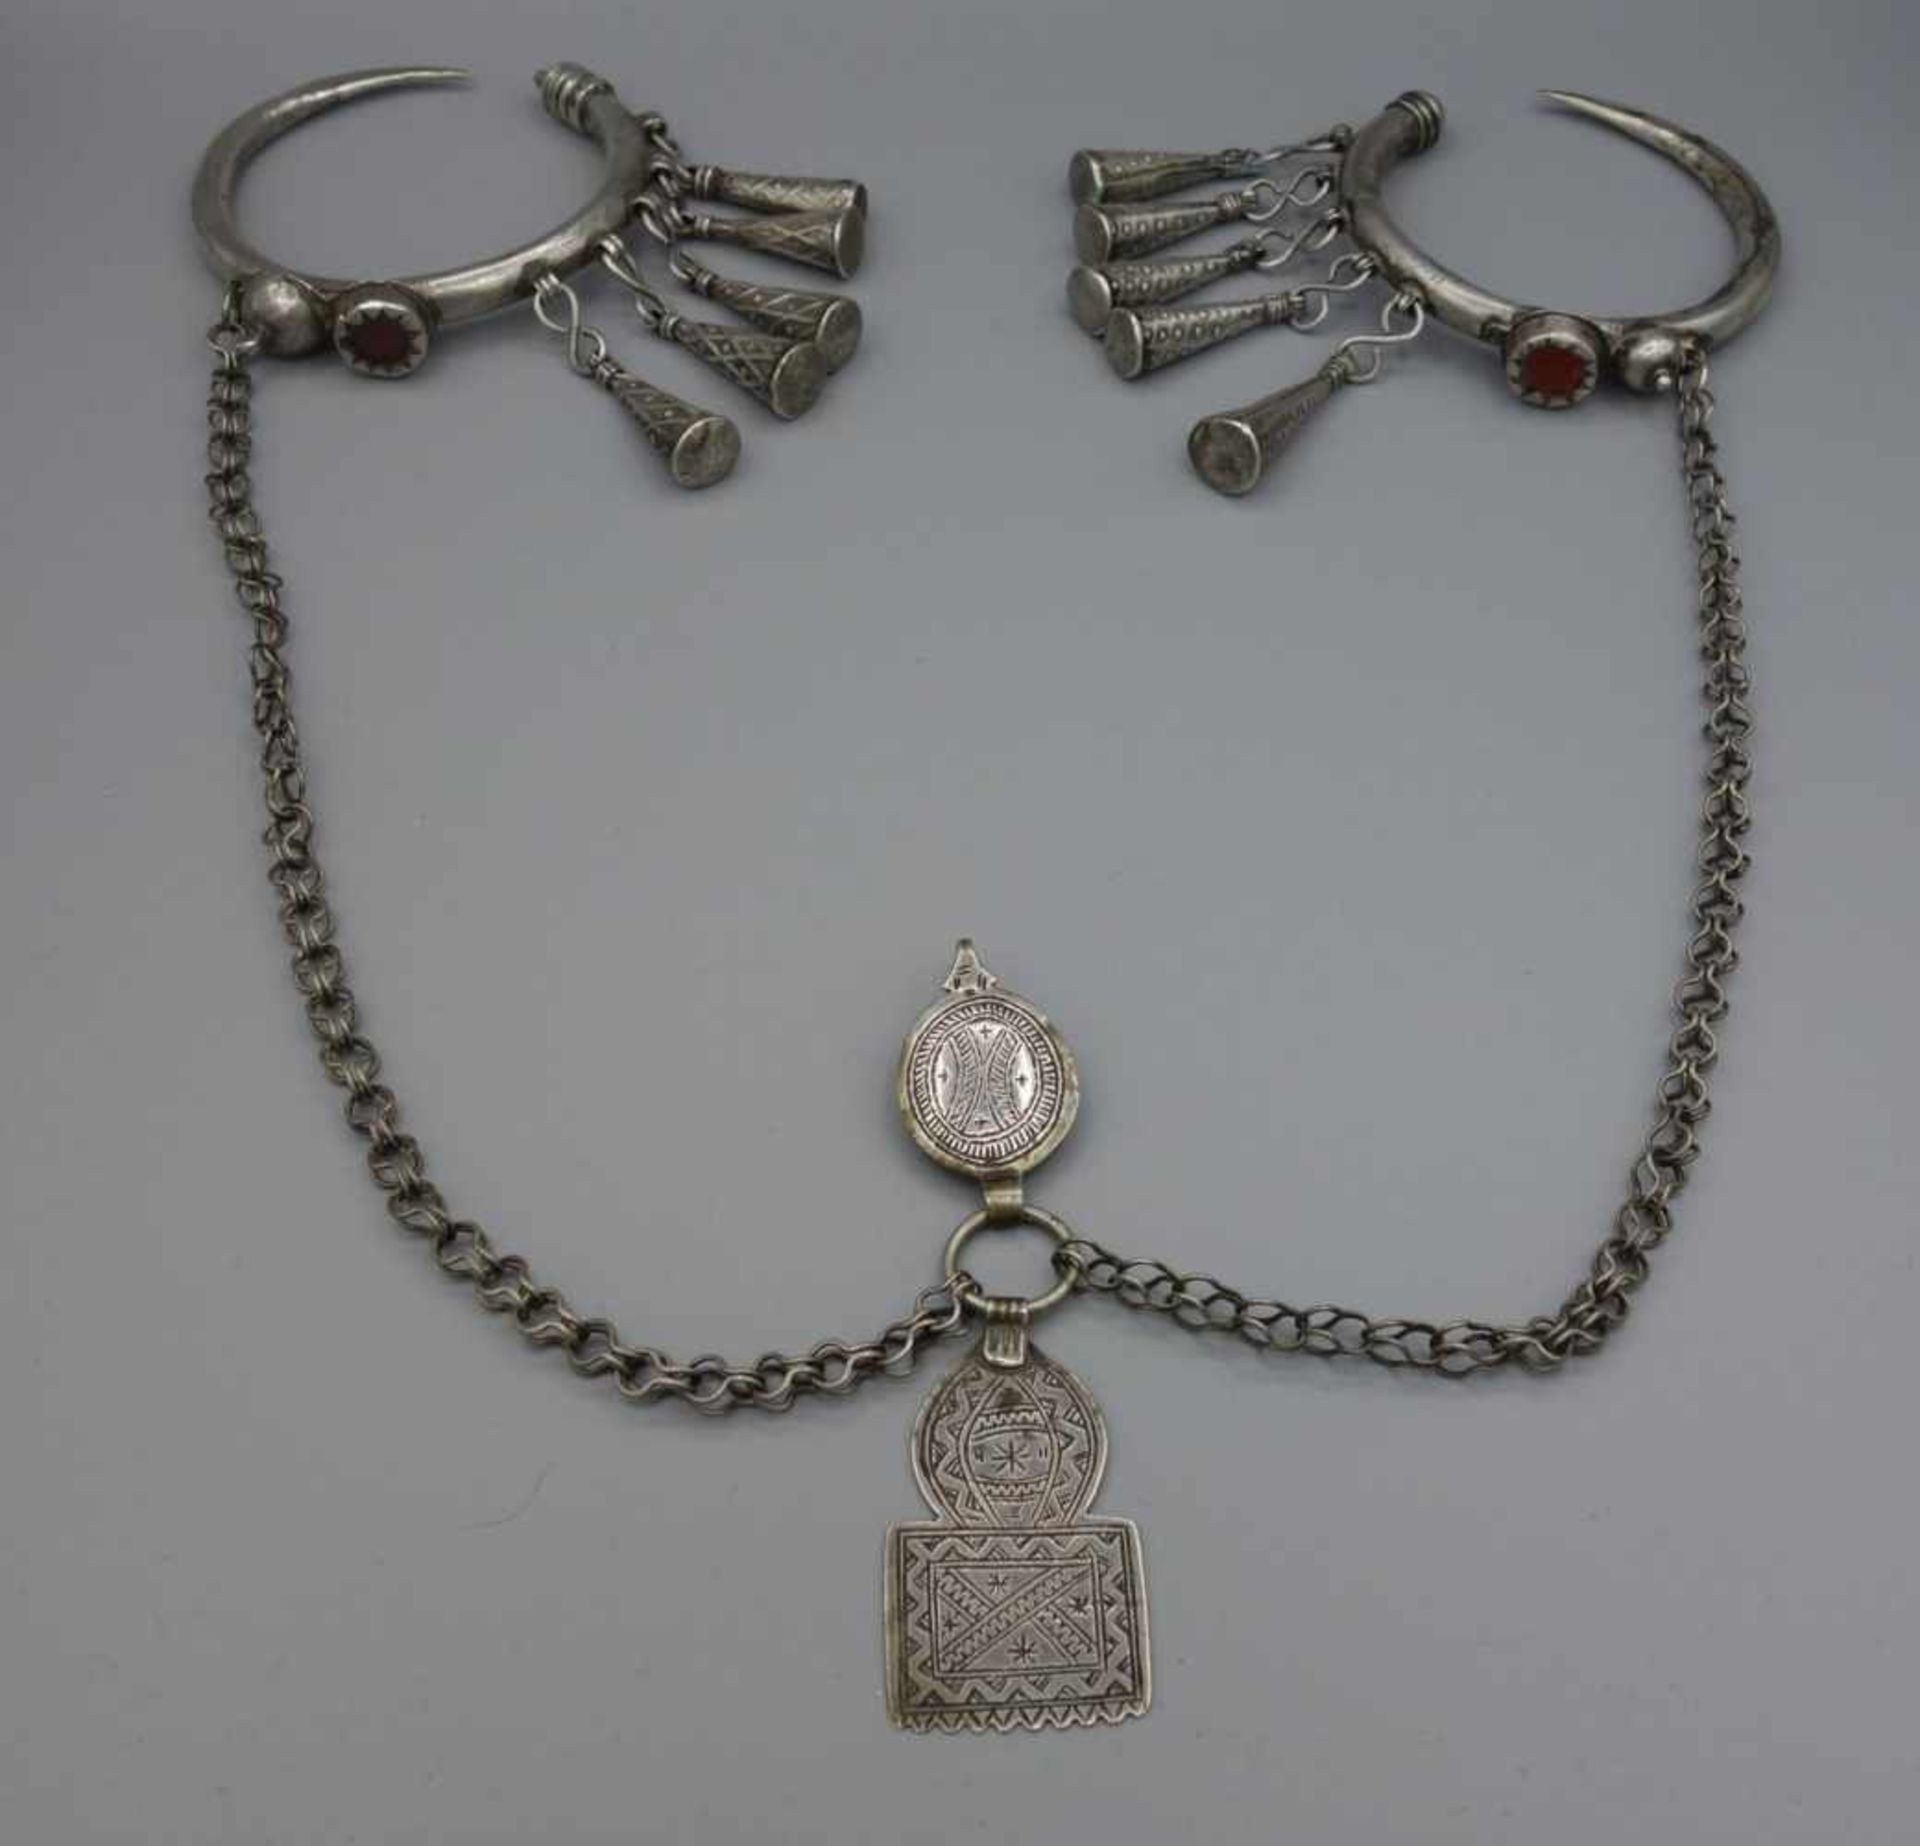 BERBER-SCHMUCK: FIBELN UND KETTE, Marokko. Silber, Gewicht: 145 g. Kette mit Fibeln. In der Mitte - Bild 2 aus 3